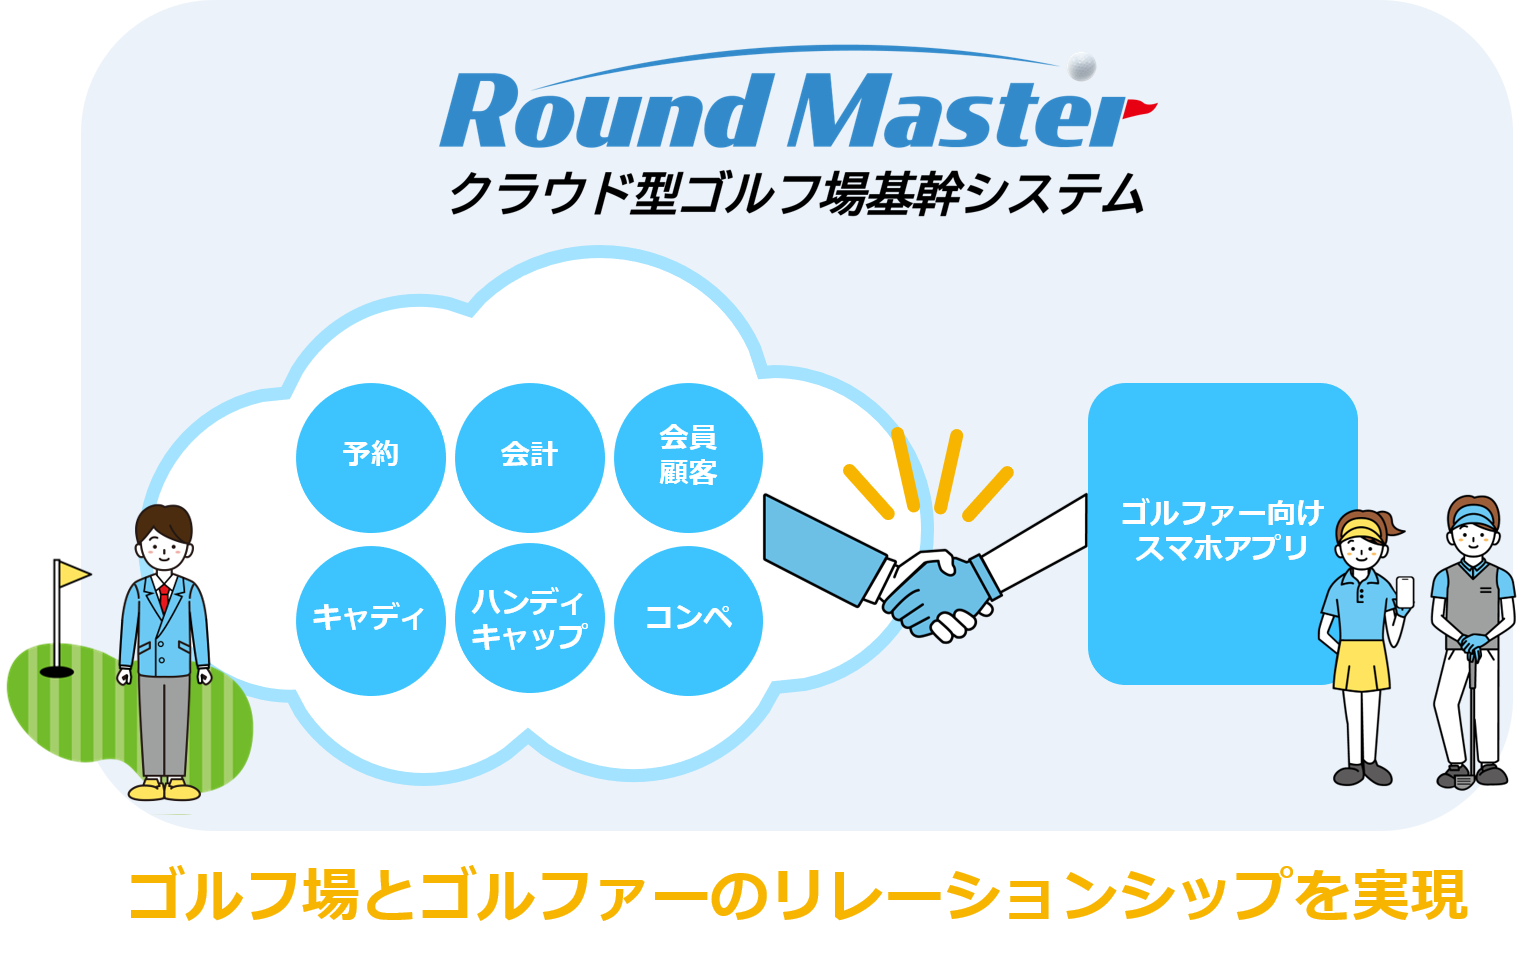 クラウド型ゴルフ場基幹システム「Round Master」初期費用0円新料金プランの提供を開始